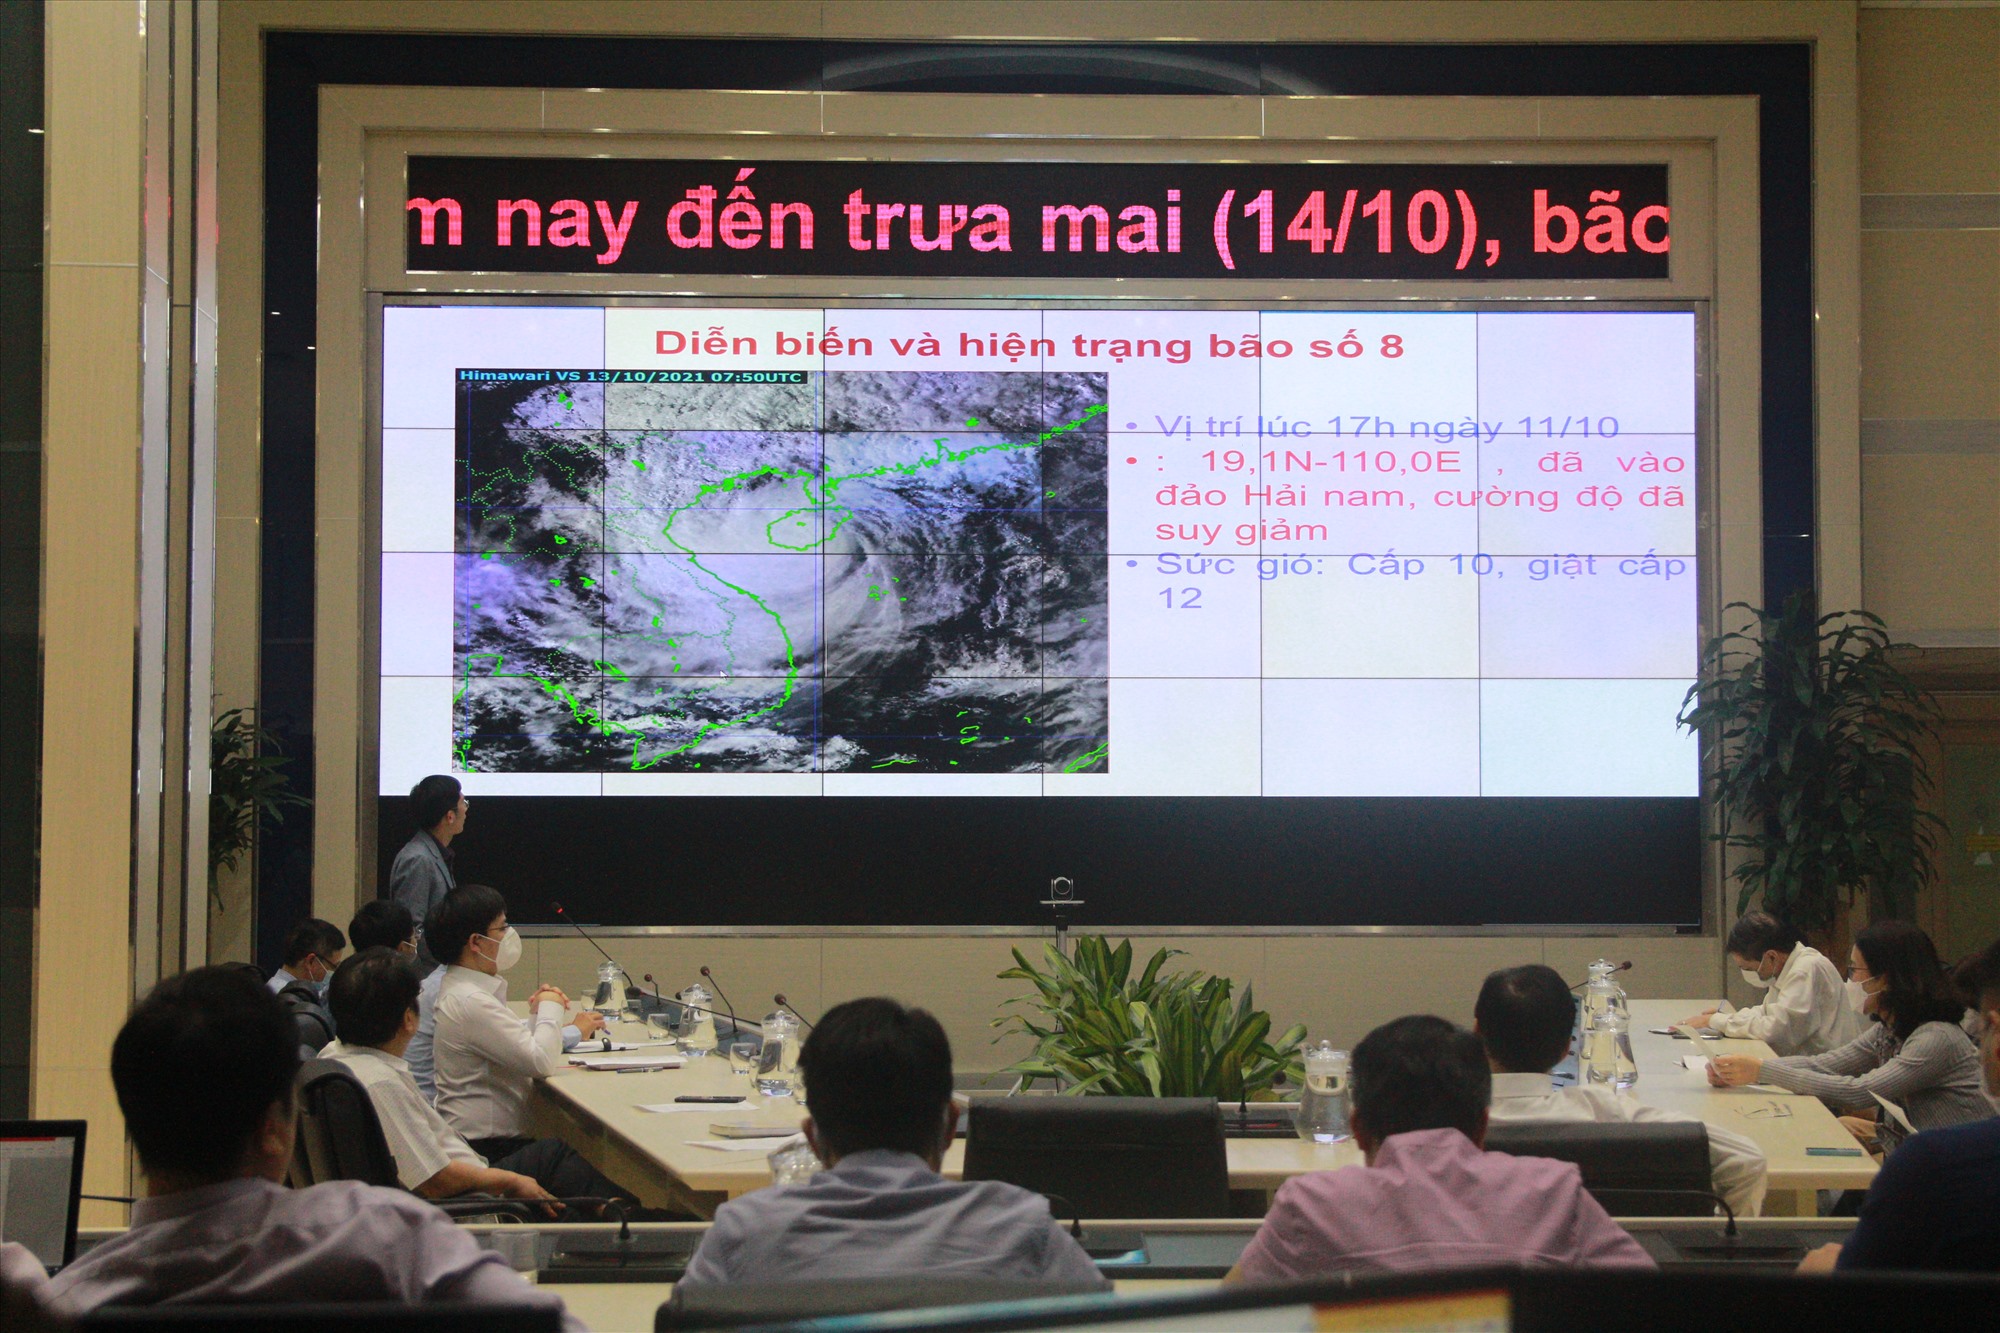 Tổng cục Khí tượng Thủy văn tiếp tục tổ chức cuộc họp thảo luận trực tuyến các diễn biến mới nhất của cơn bão số 8.